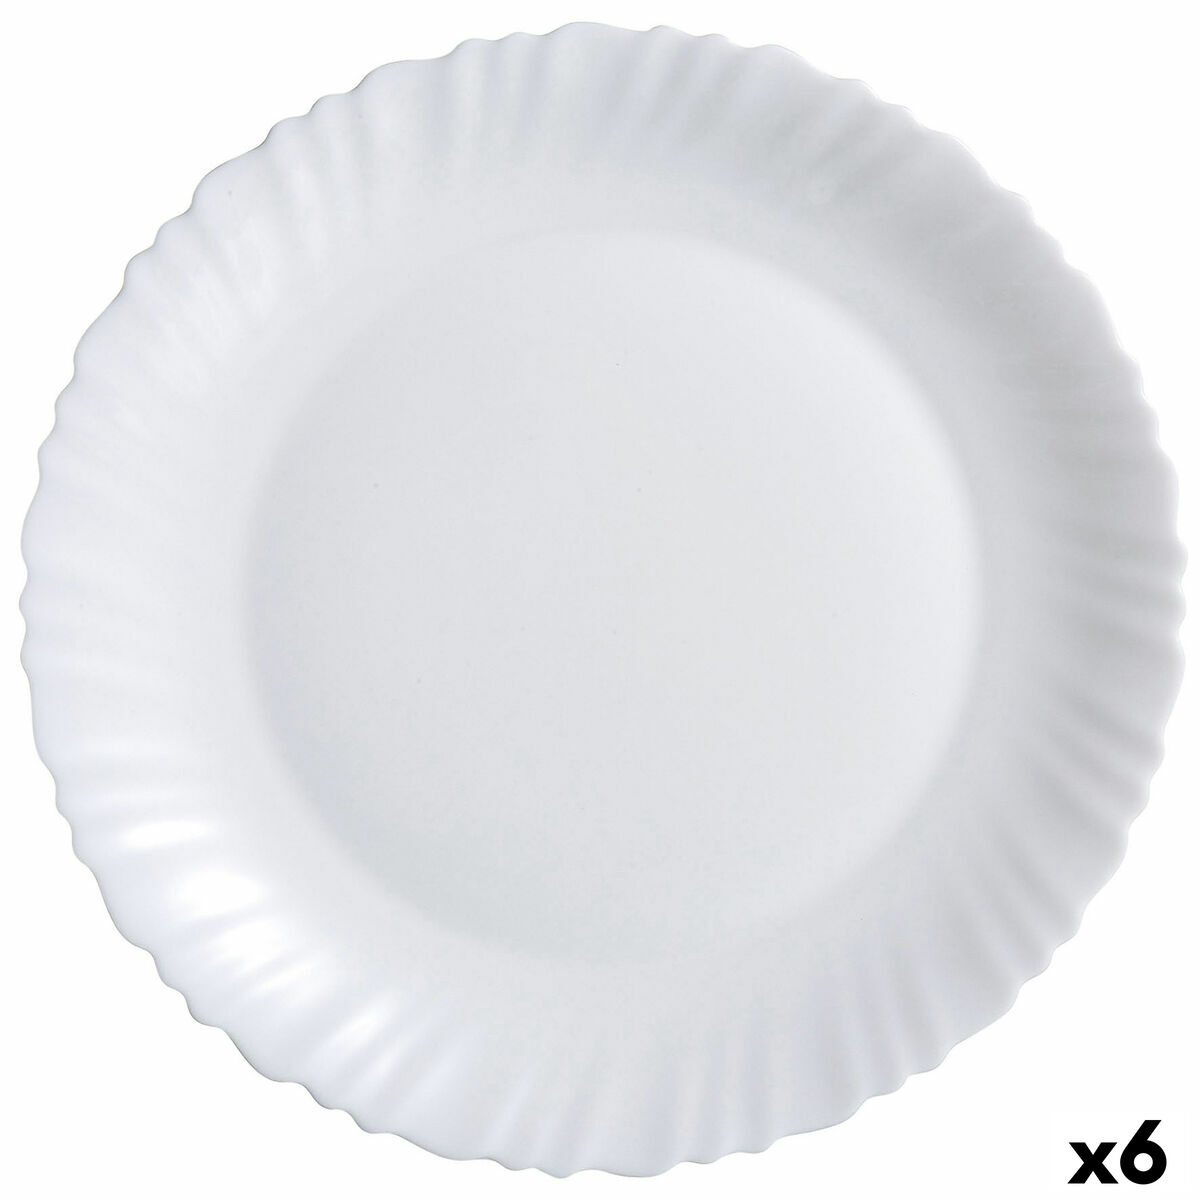 Teglia da Cucina Luminarc Feston Bianco Vetro (Ø 30 cm) (6 Unità)